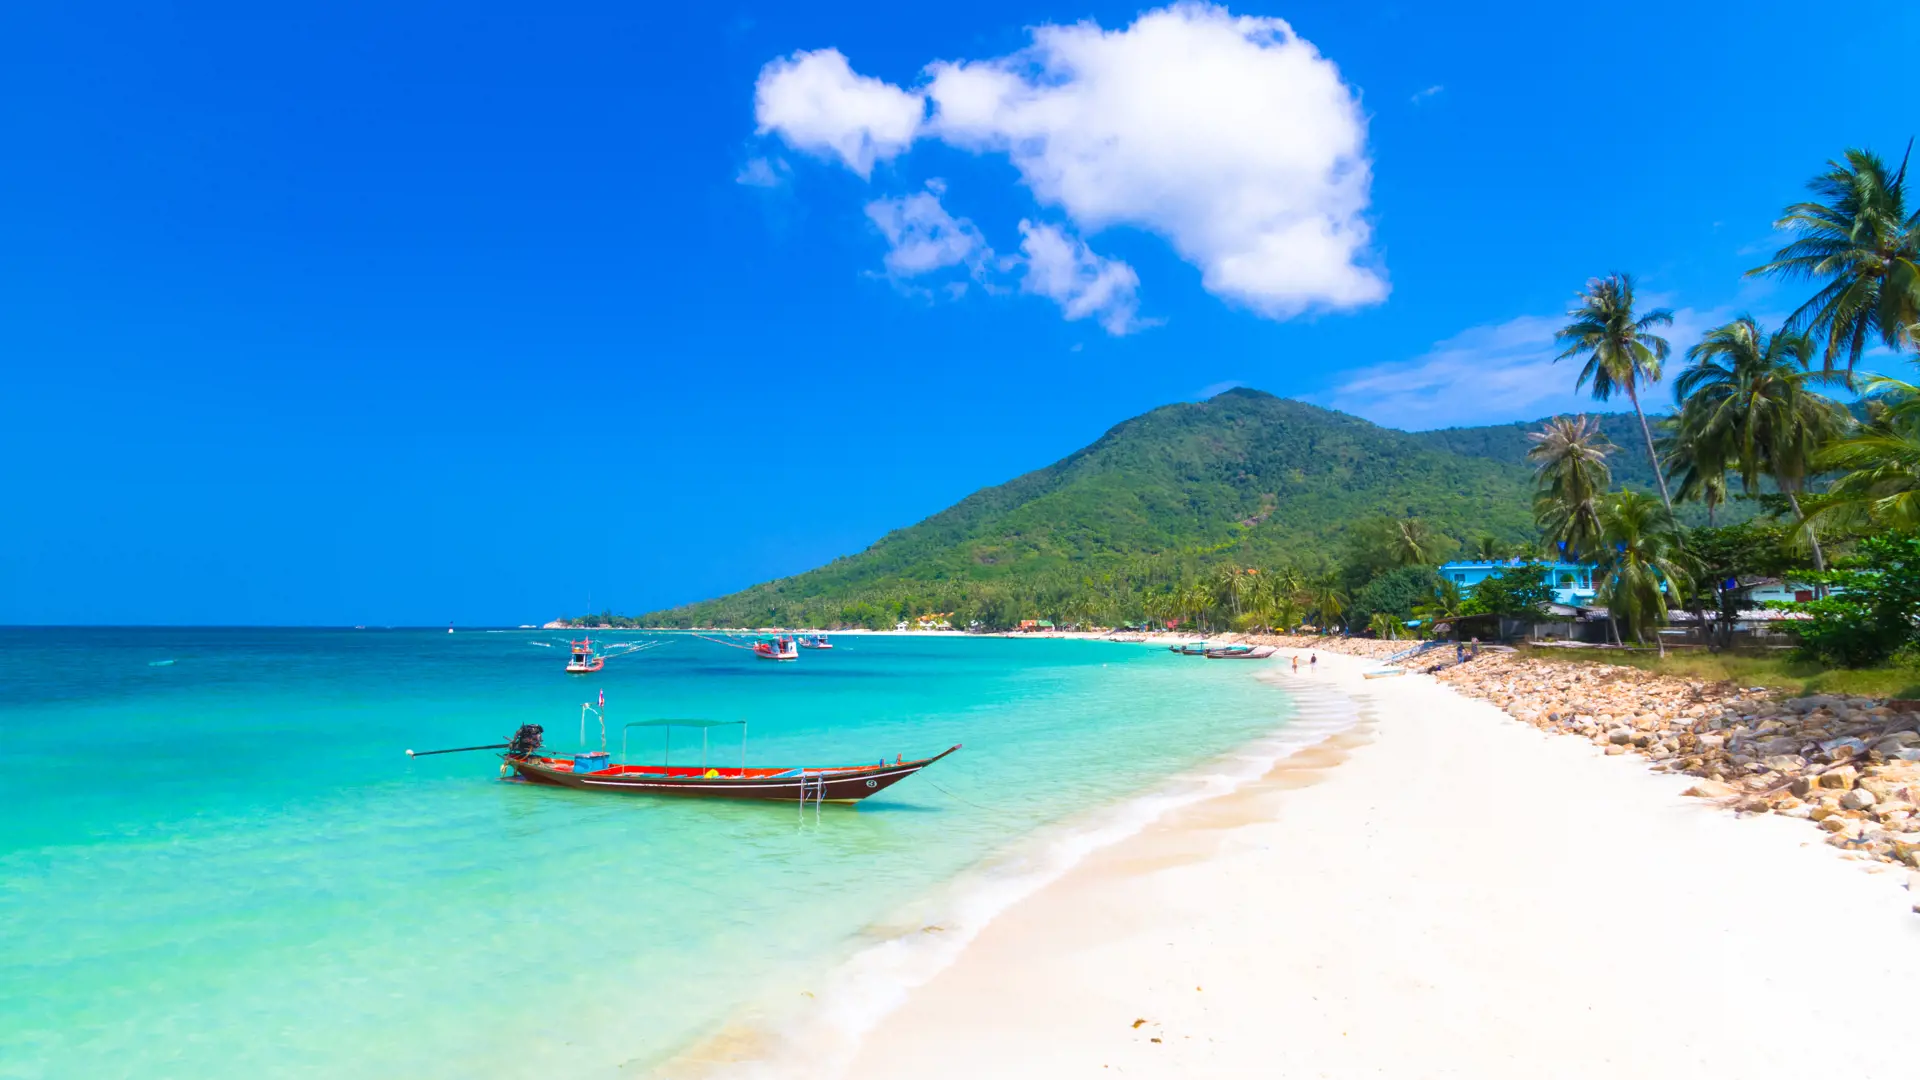 ØVRIGE STRANDE - I bor nok ved Koh Phangans bedste strand, men hvis I får lyst til nye omgivelser, kan I besøge nogle af øens øvrige flotte strande.